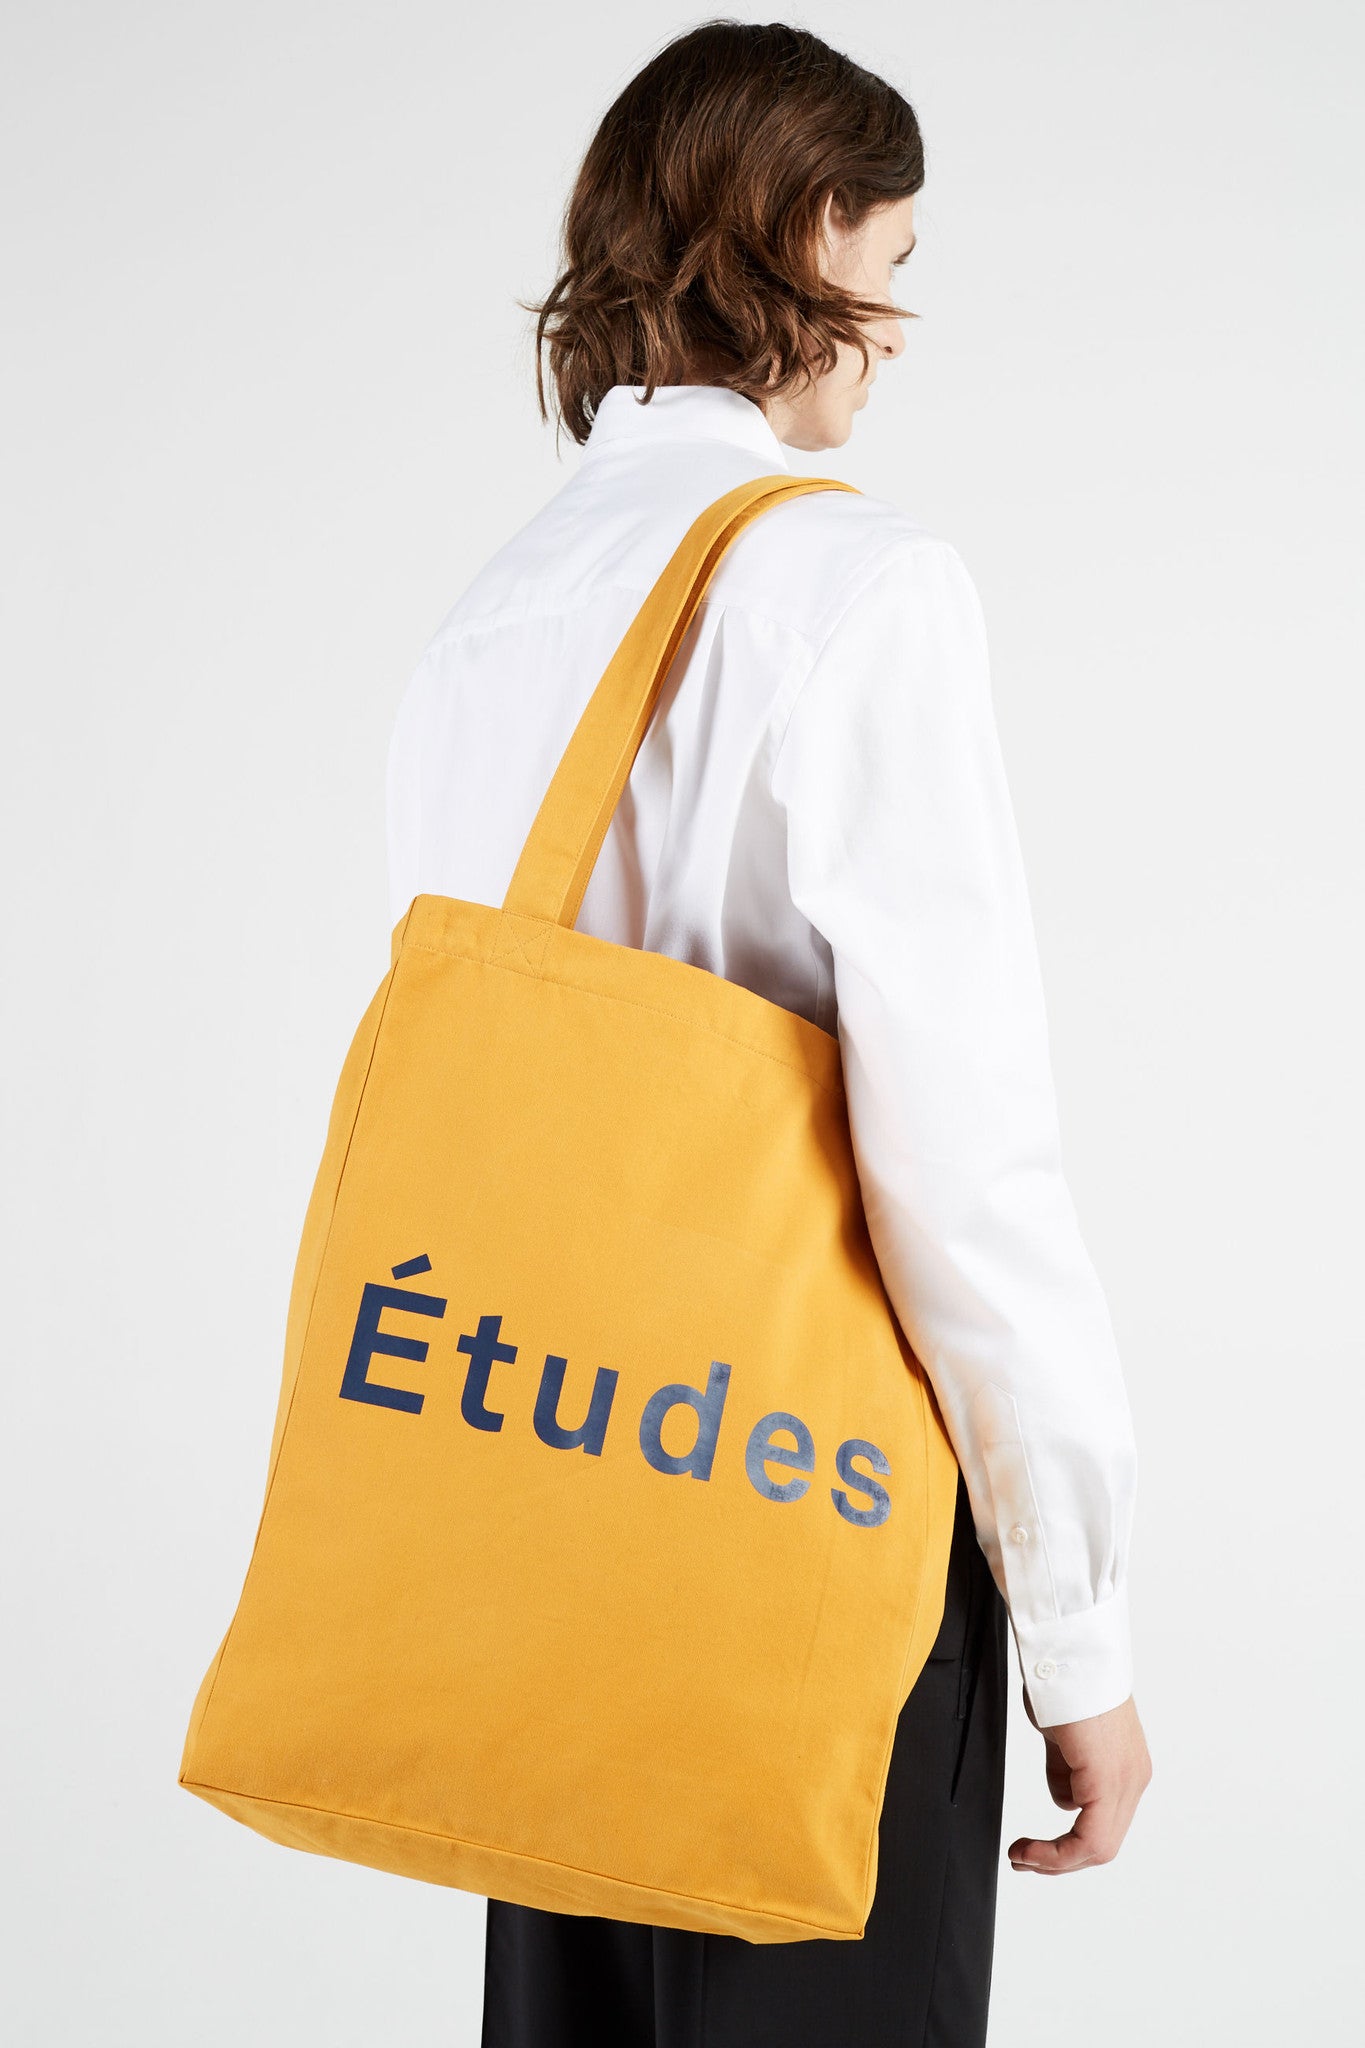 Études Studio - October Études Sun Tote bag